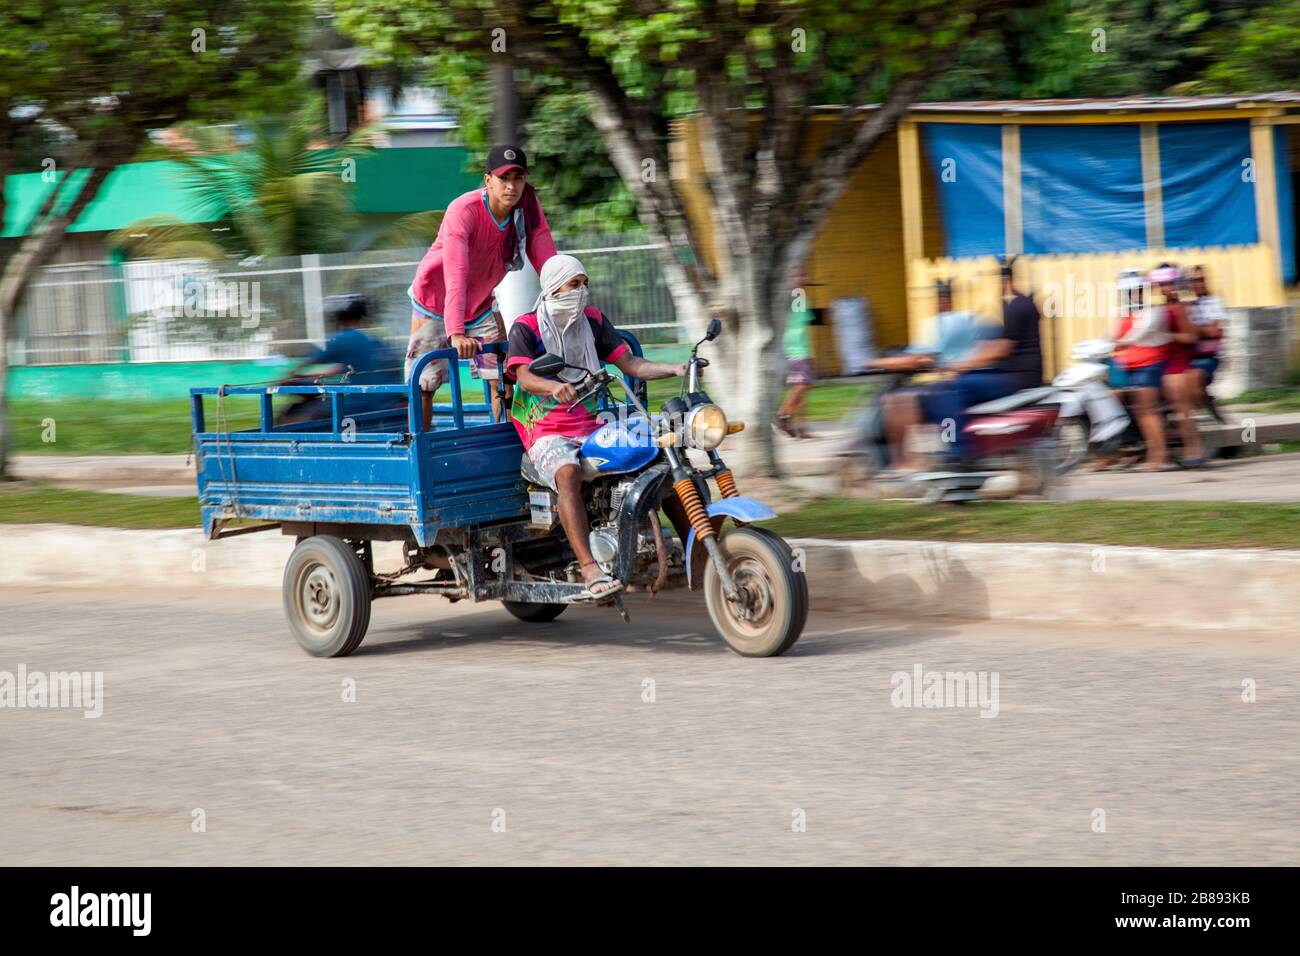 Mit freundlichen Grüßen Fettleibigkeit BungeeSprung motorrad transportieren  transporter amazon Hunger Kakadu Briefmarke